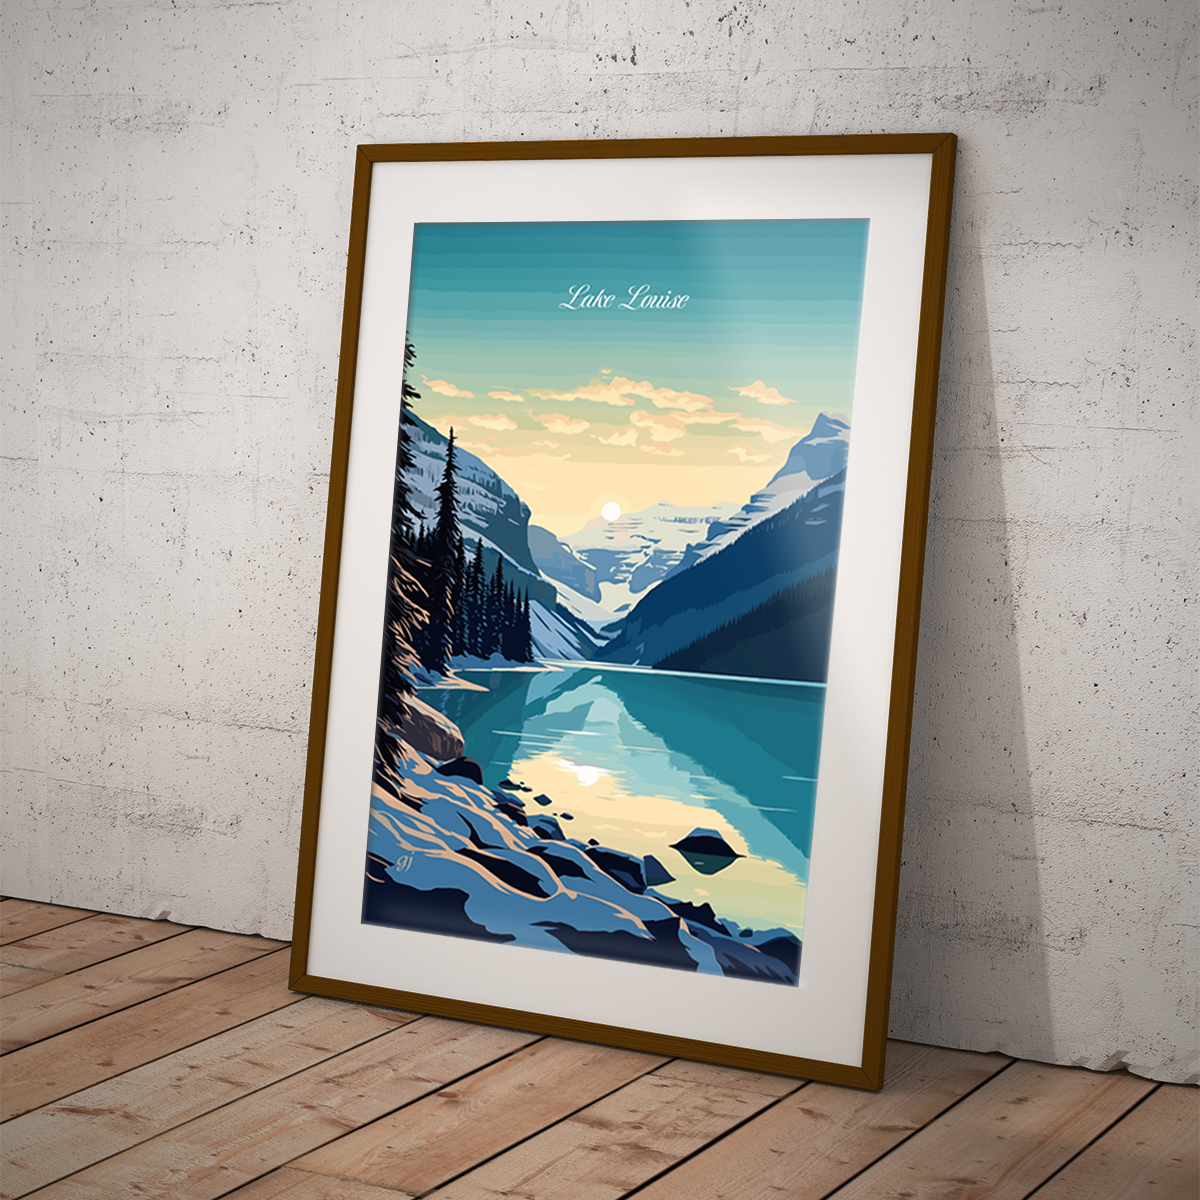 Lake Louise poster by bon voyage design